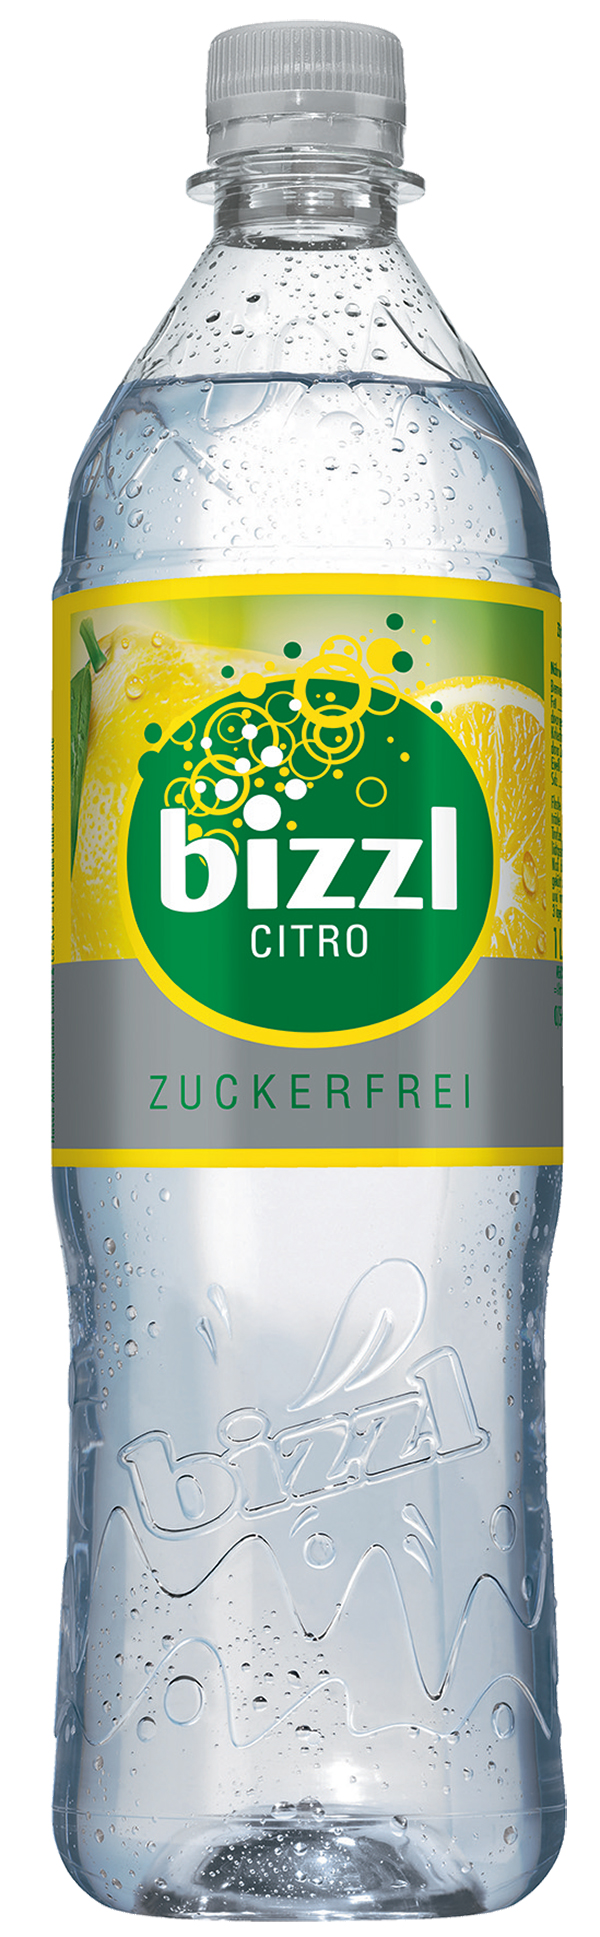 Bizzl Citro Limonade 12 x 1,0 l (PET)